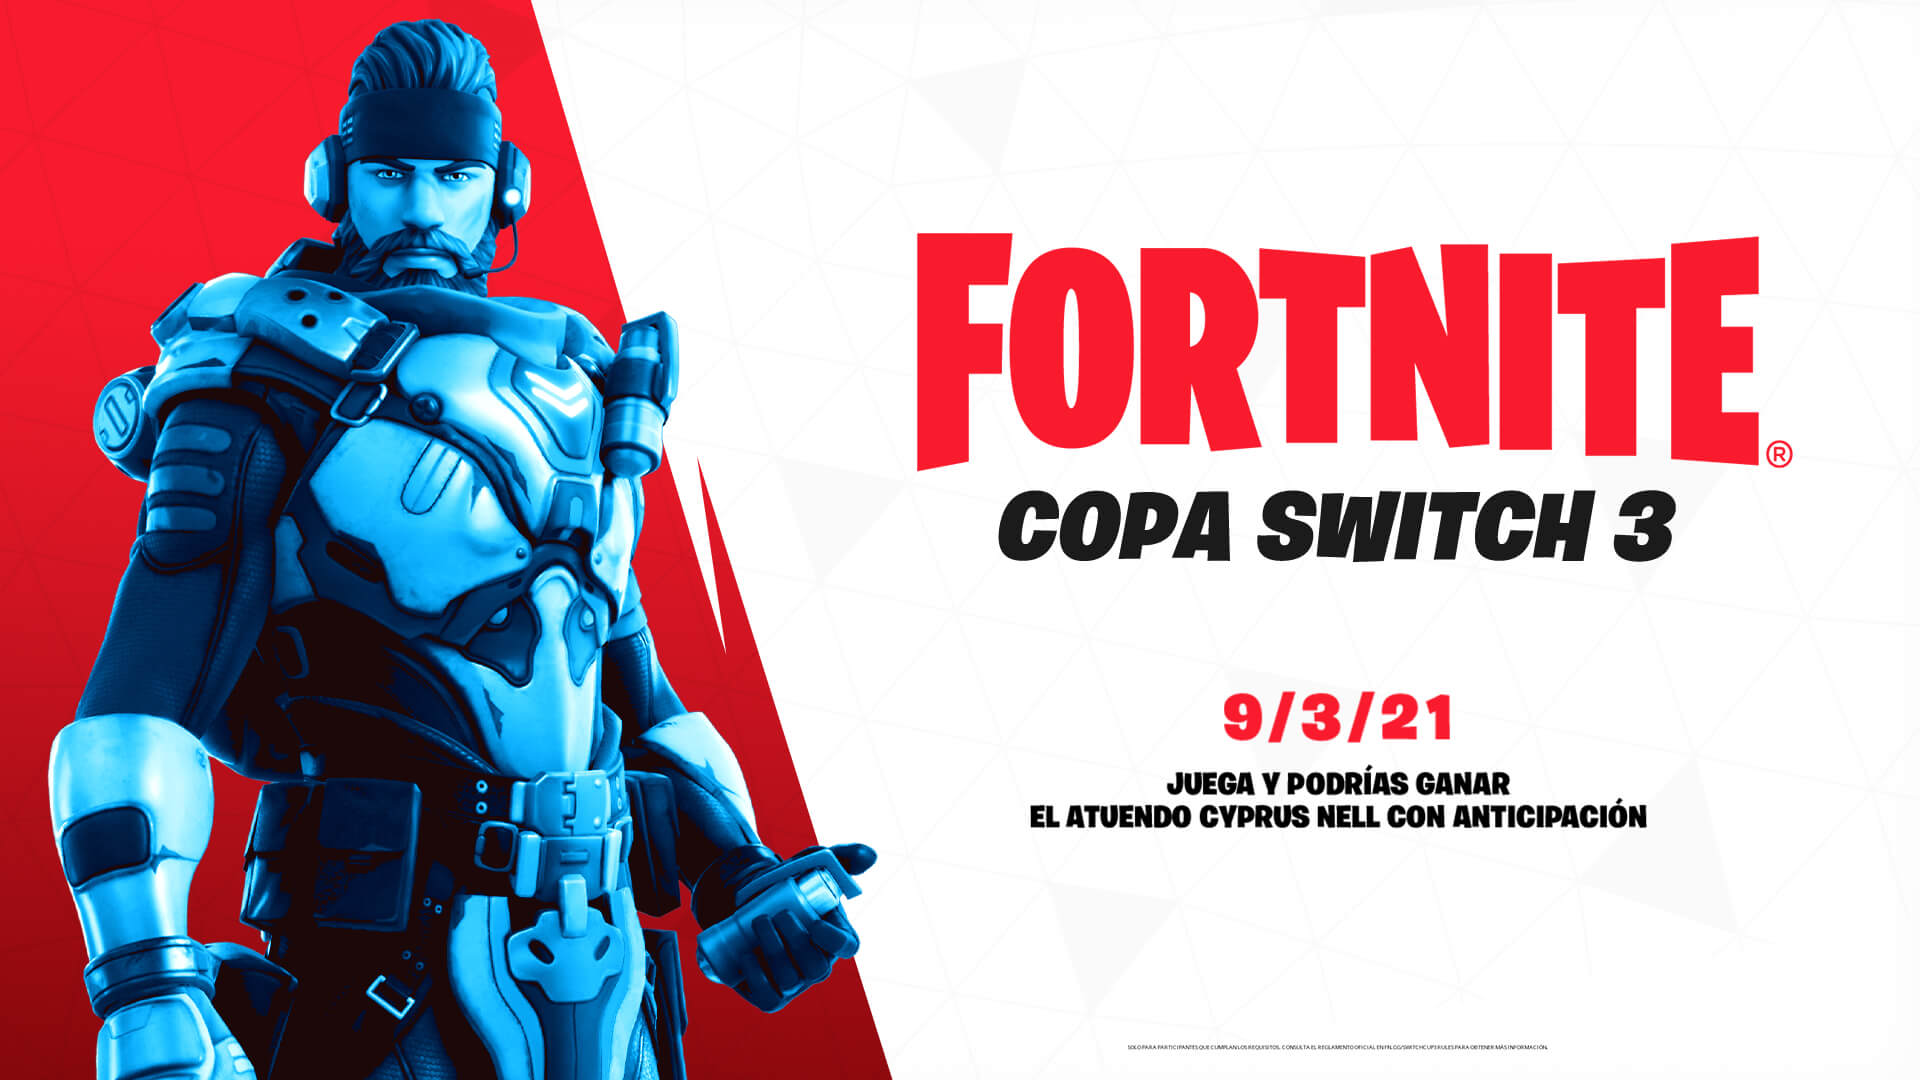 Copa Switch 3 en Fortnite